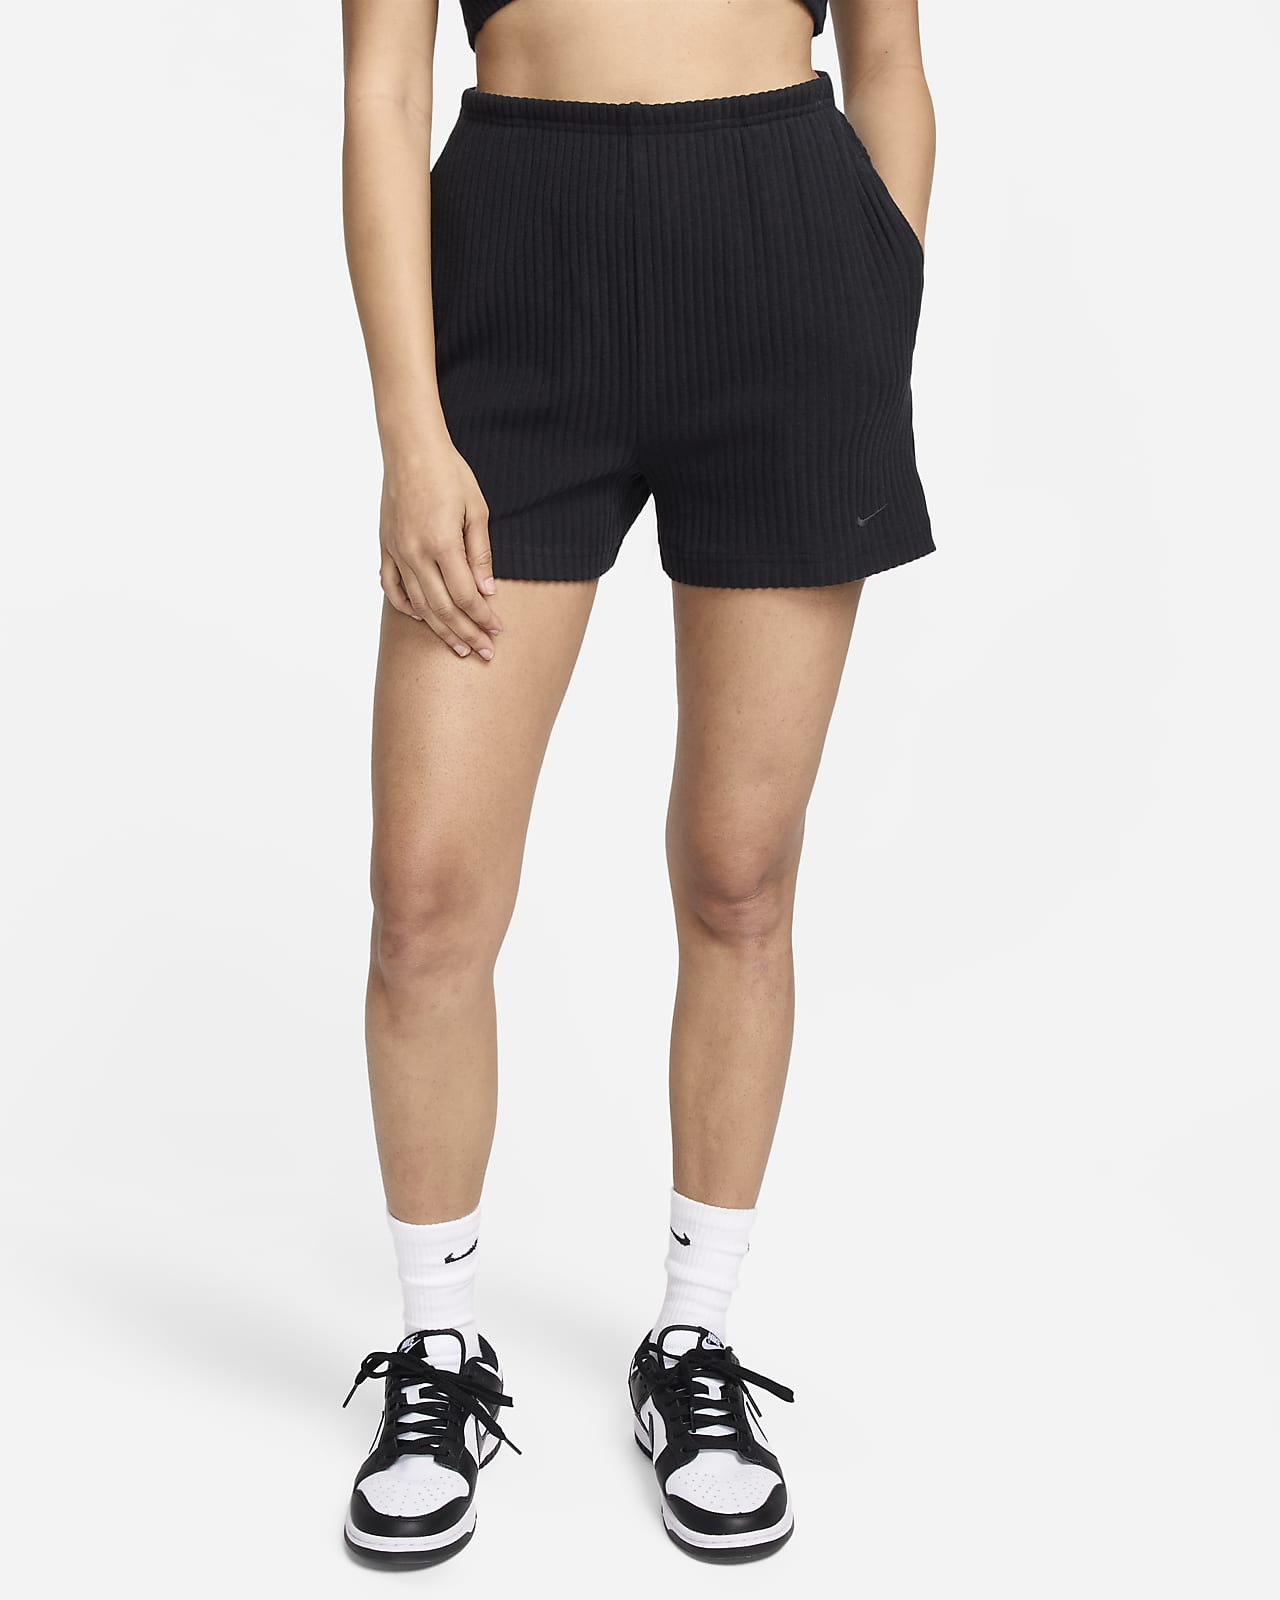 Short slim côtelé taille haute 5 cm Nike Sportswear Chill Knit pour femme